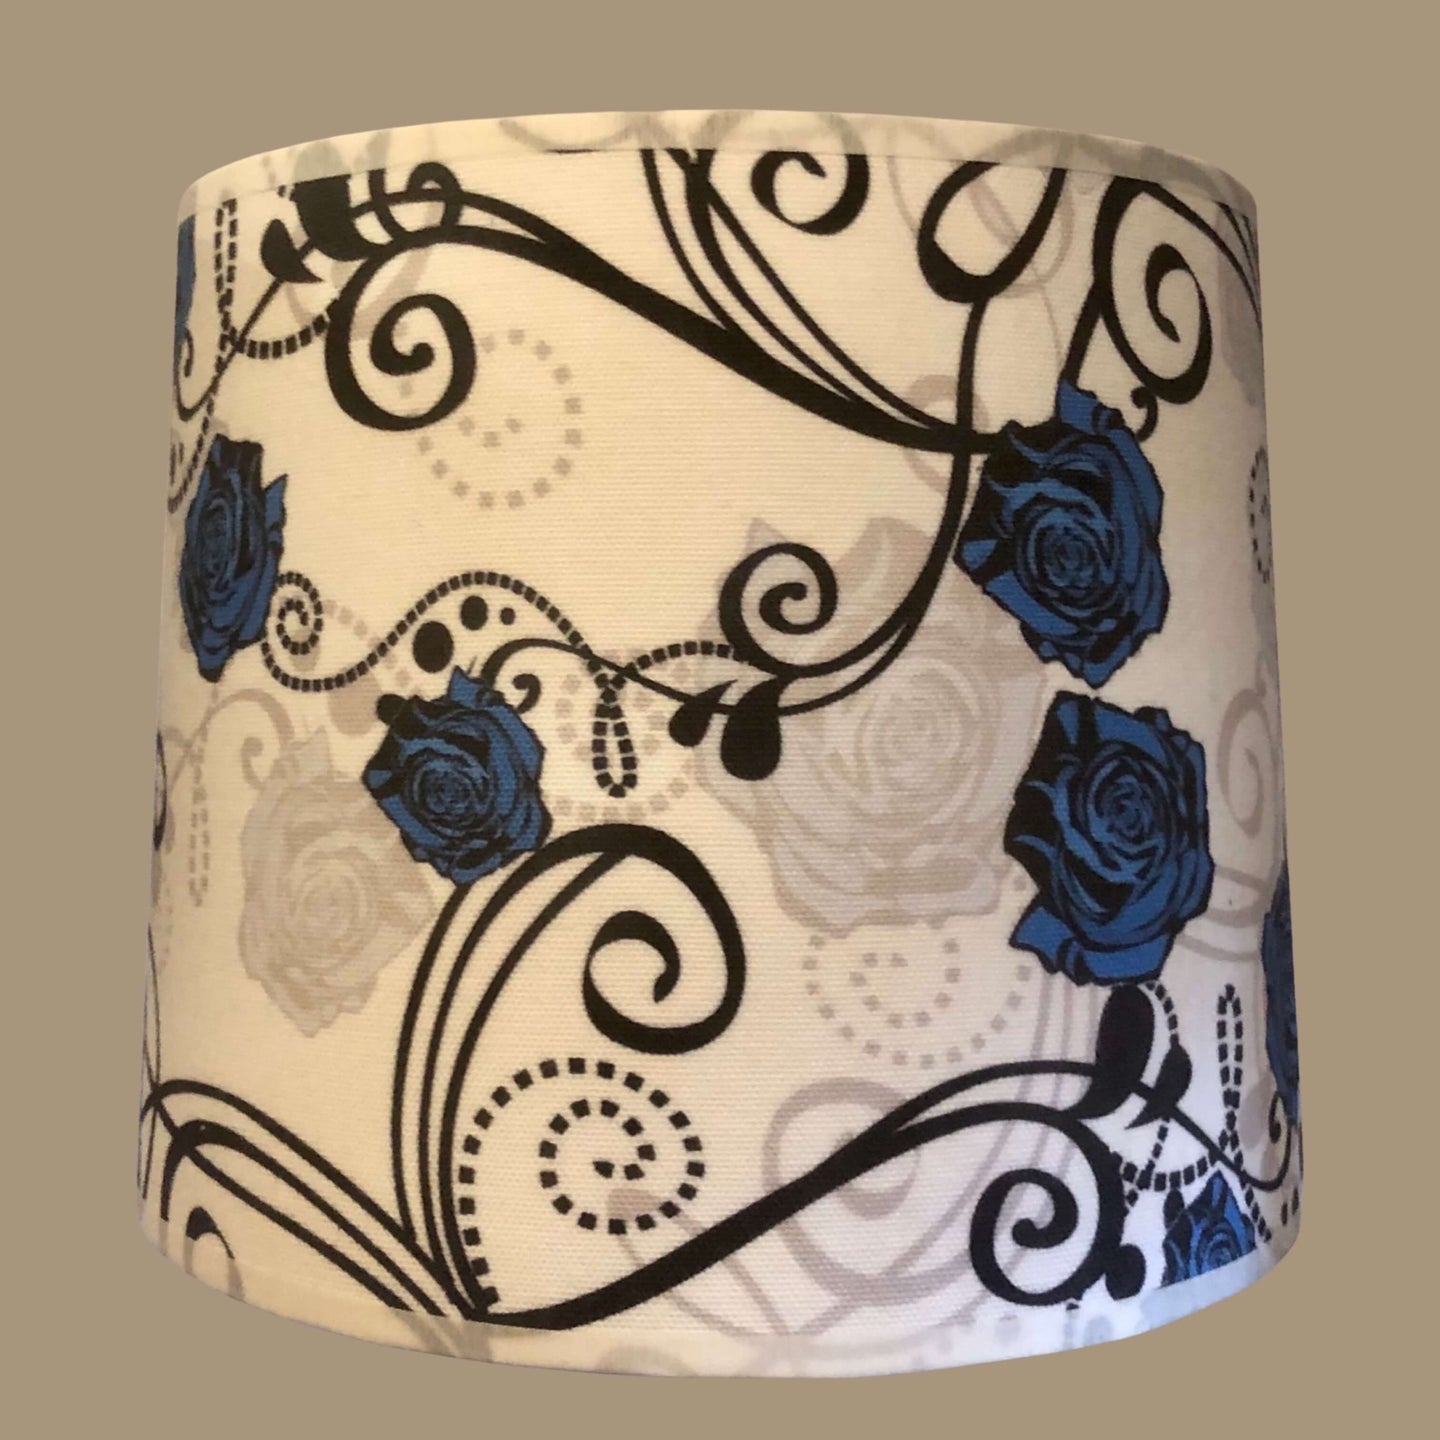 Abat jour tambour 22 cms. Contrecollé sur un coton à motifs de roses stylisées bleus.